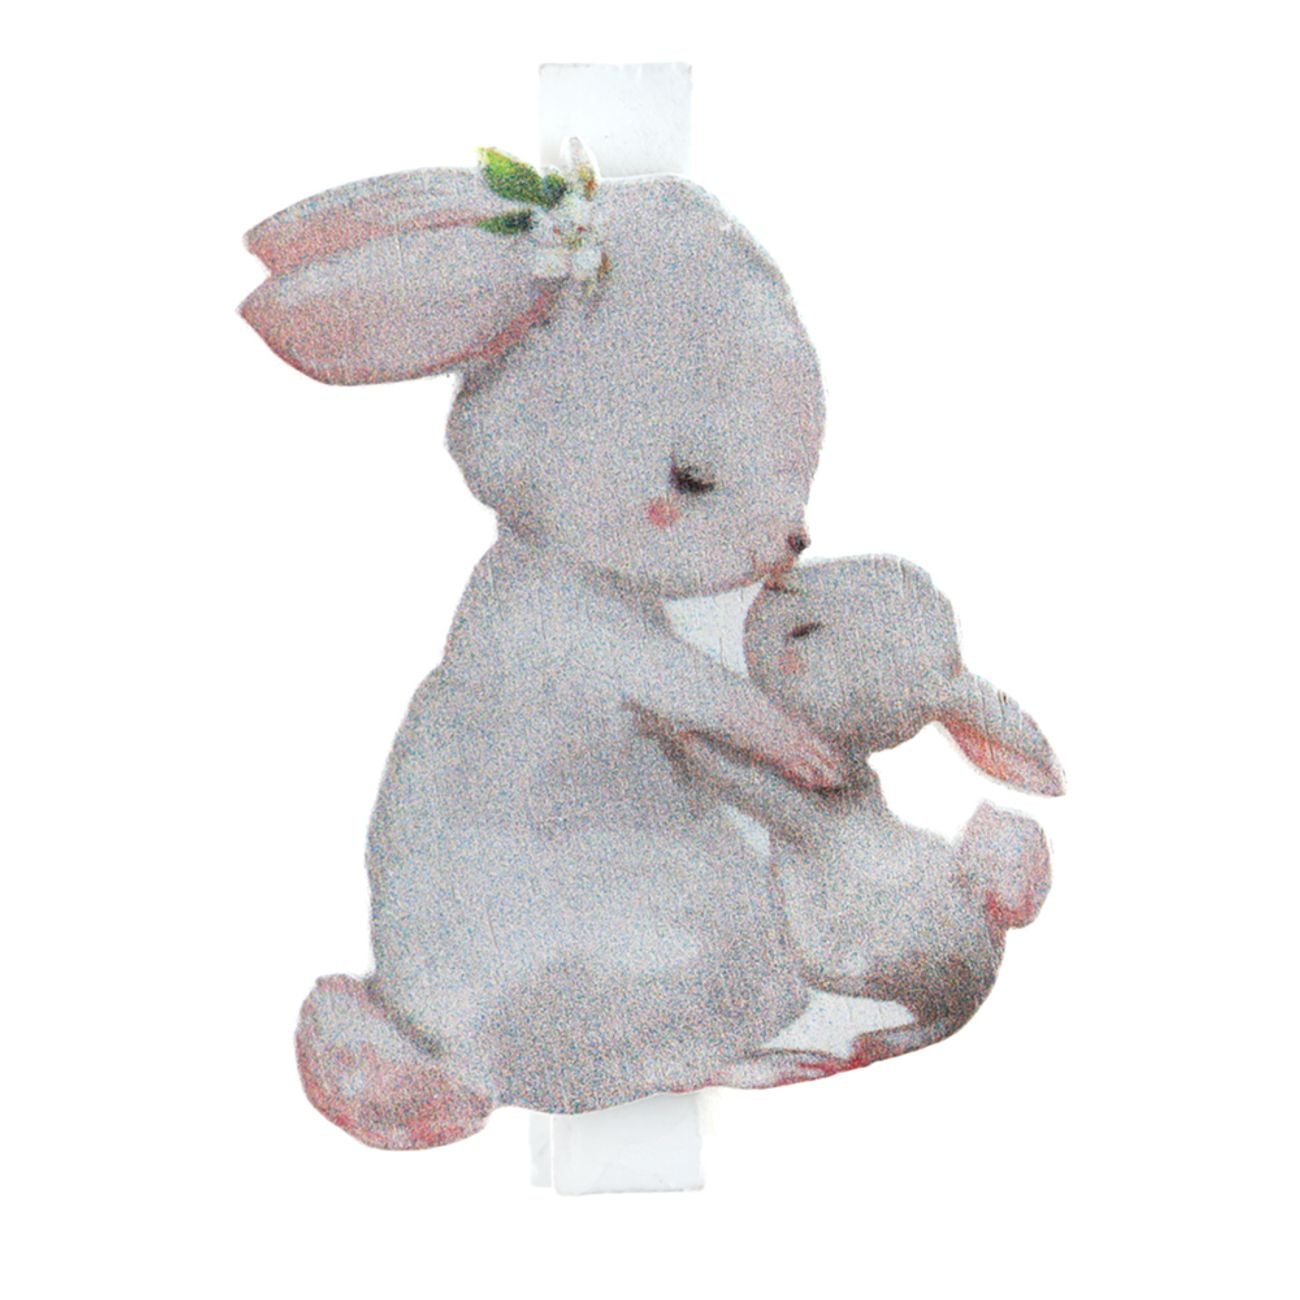 glasmarkorer-my-little-rabbit-99211-1